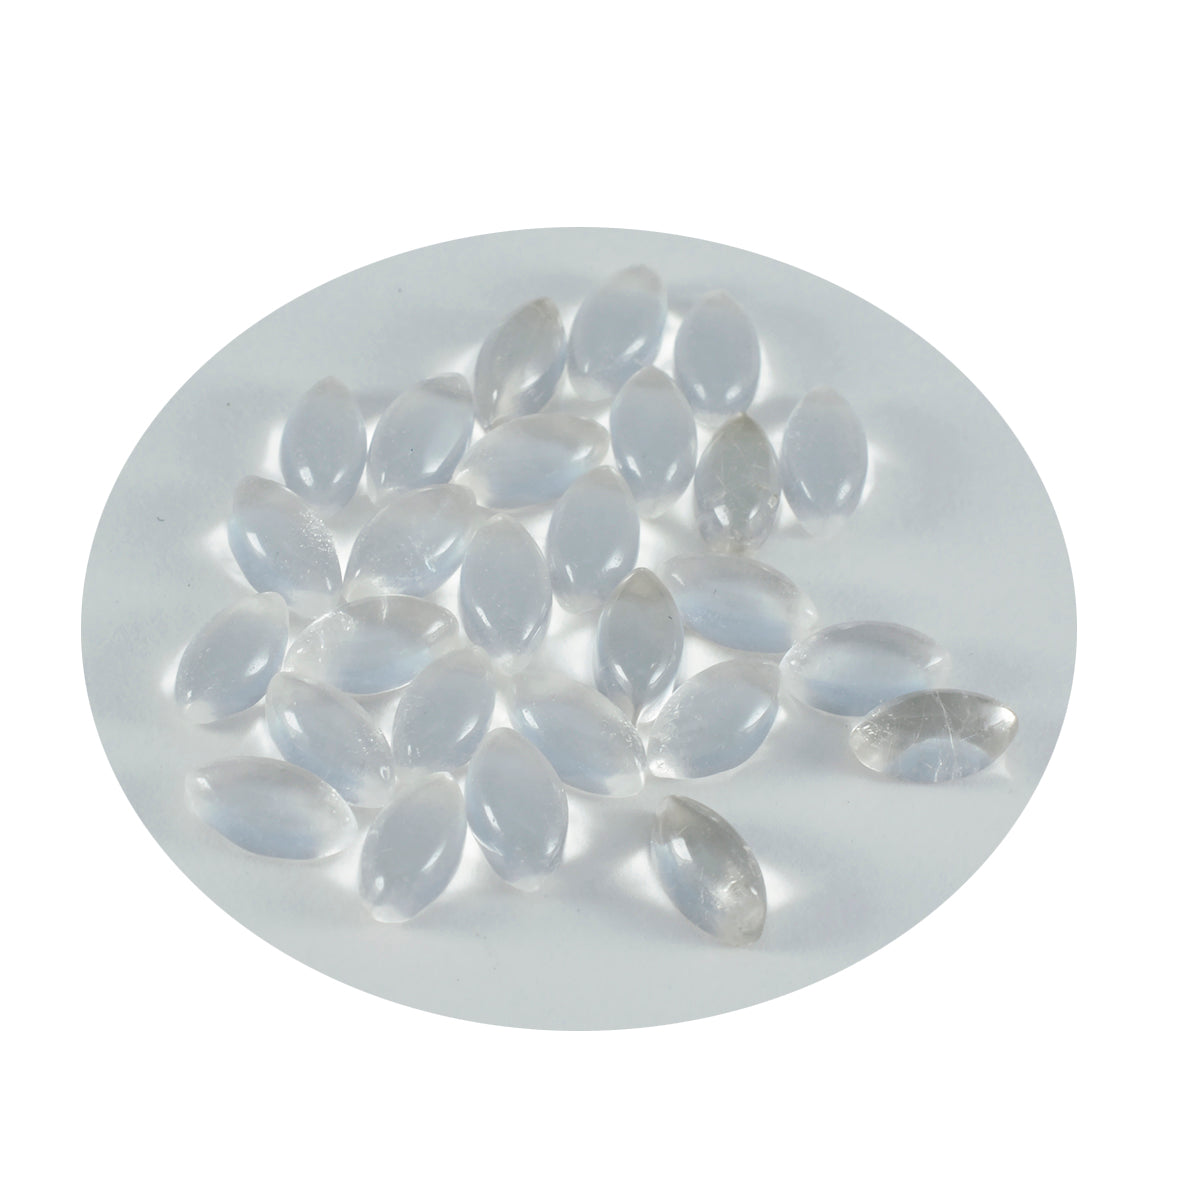 Riyogems – cabochon de quartz en cristal blanc, 5x10mm, forme marquise, belle qualité, pierre précieuse en vrac, 1 pièce